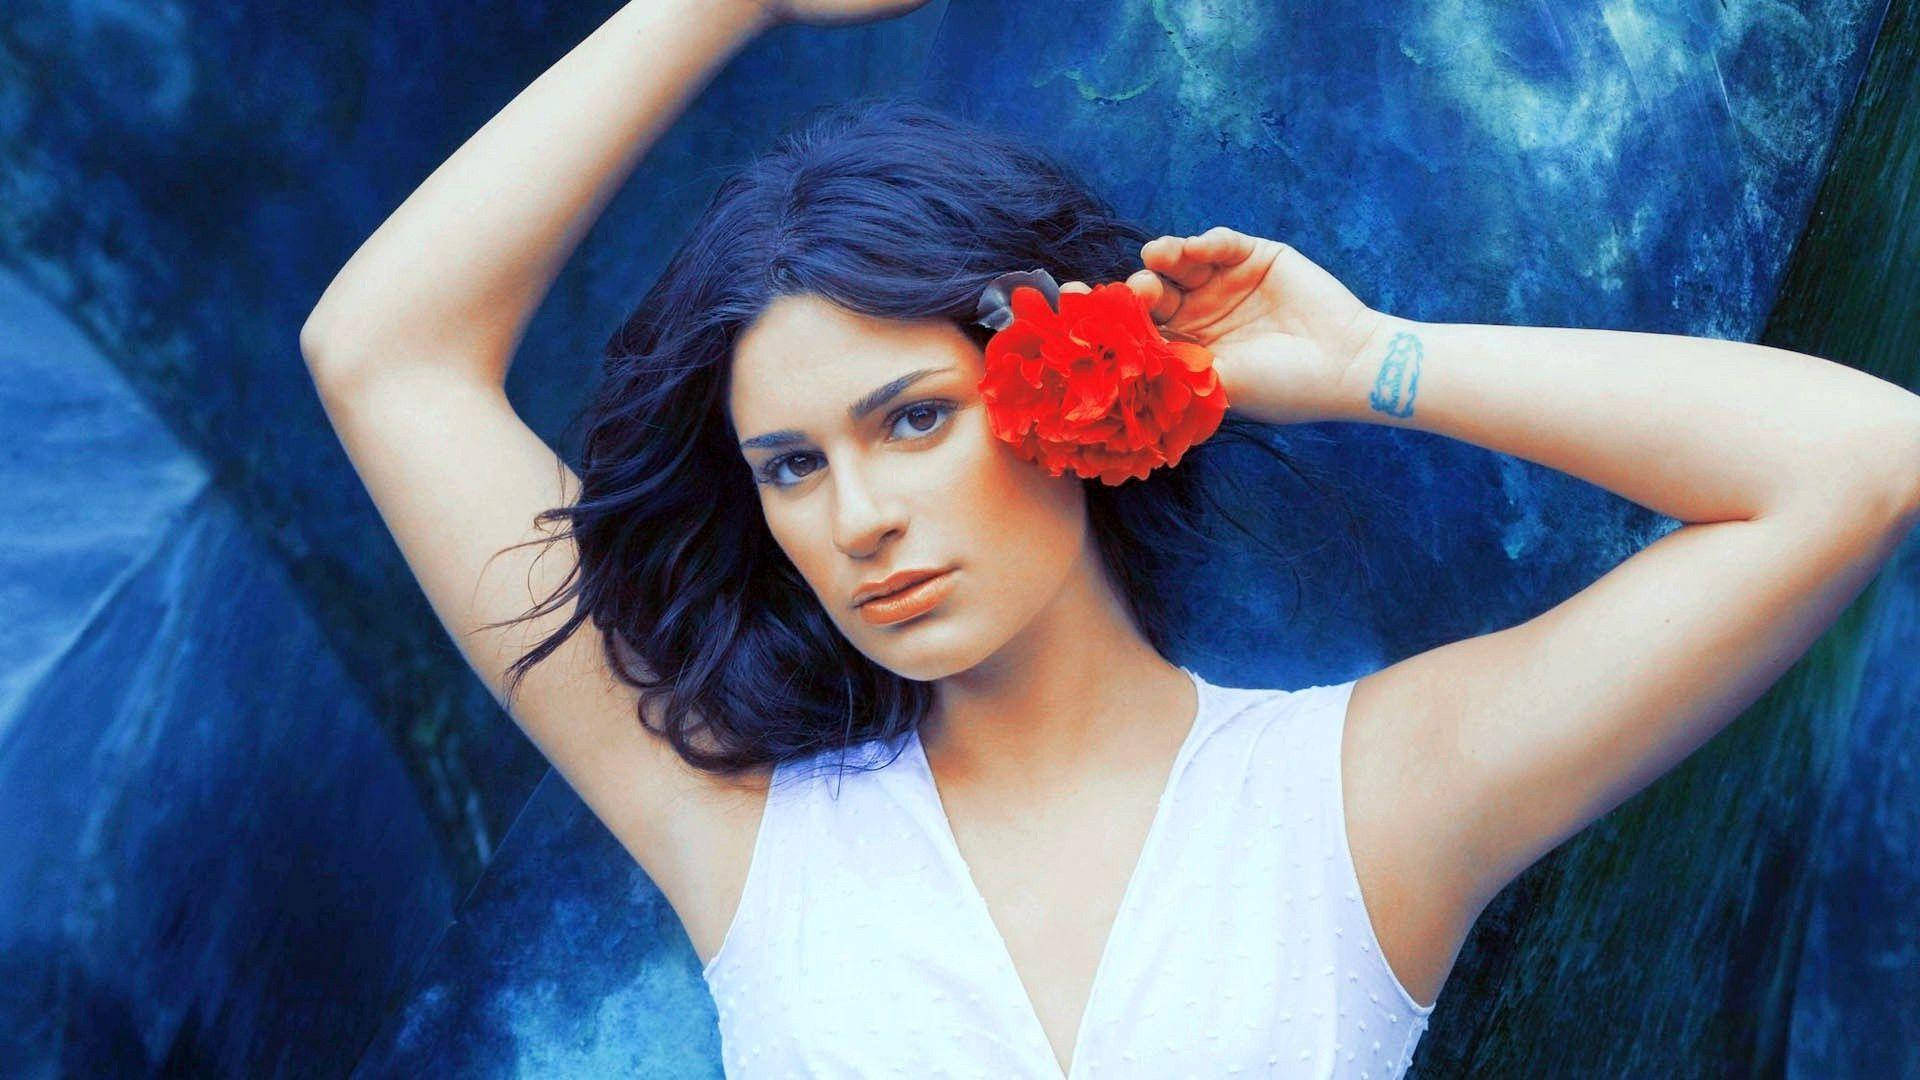 Lea Michele Red Flower On Ear Background